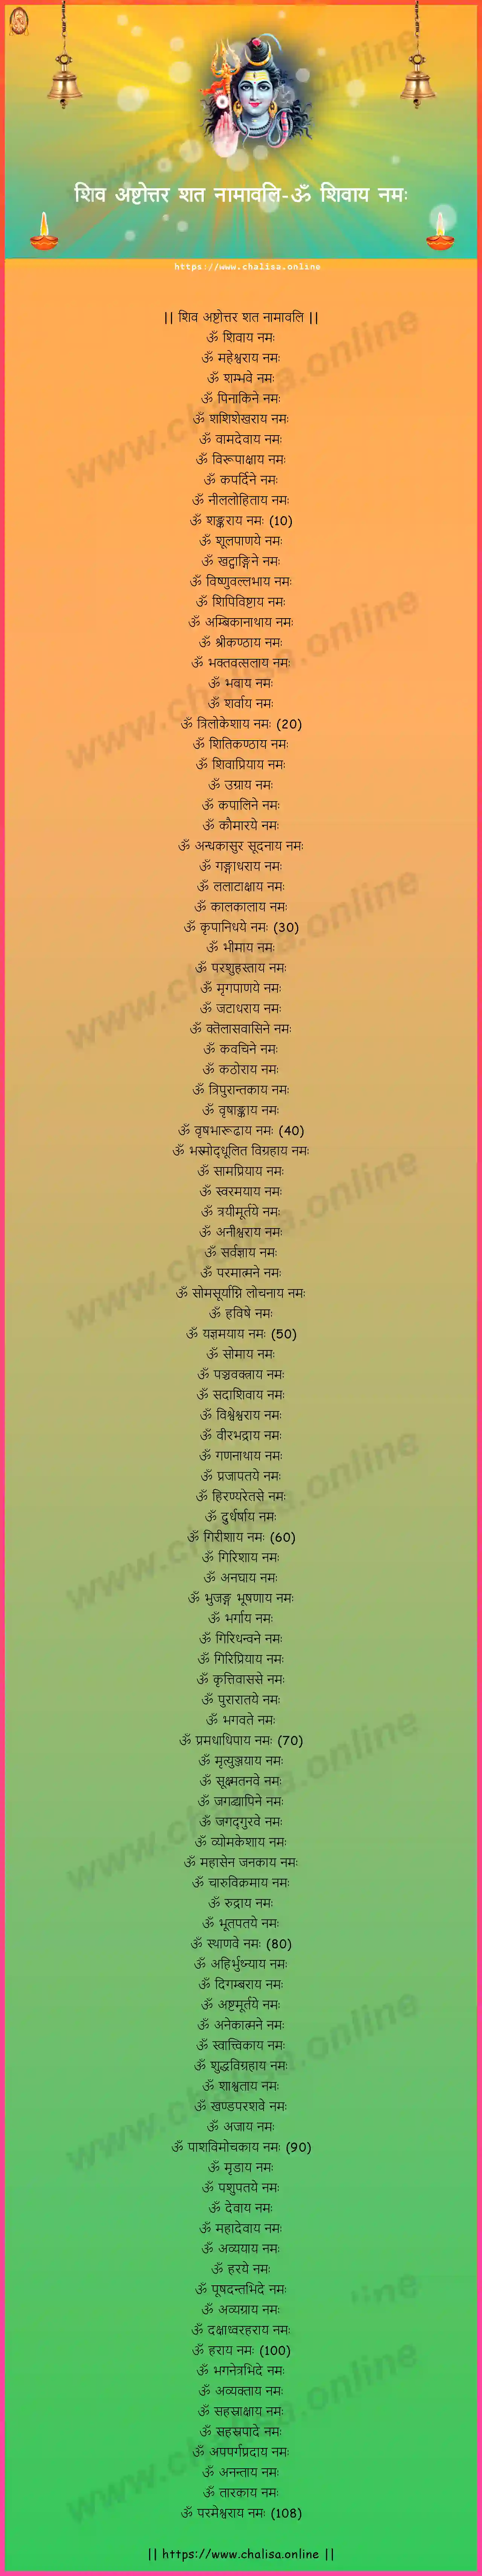 om-sivaya-namah-shiva-ashtottara-sata-namavali-sanskrit-sanskrit-lyrics-download